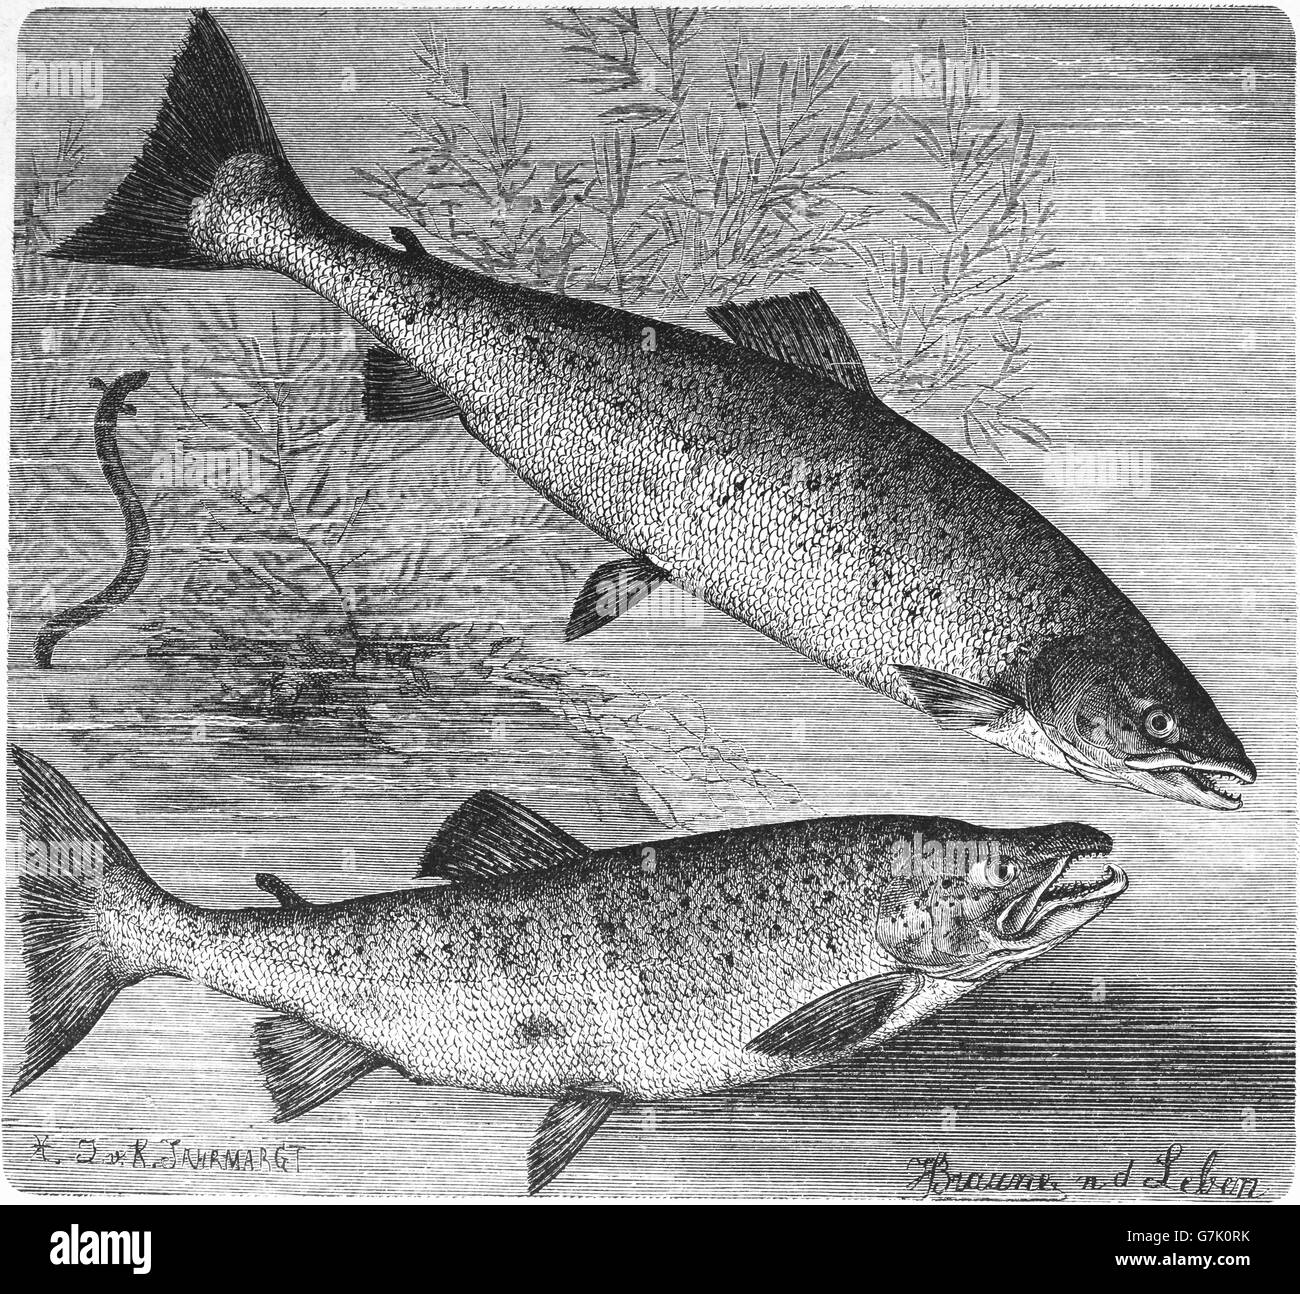 Le saumon atlantique, Salmo salar et la truite brune (Salmo trutta, illustration de livre daté 1904 Banque D'Images